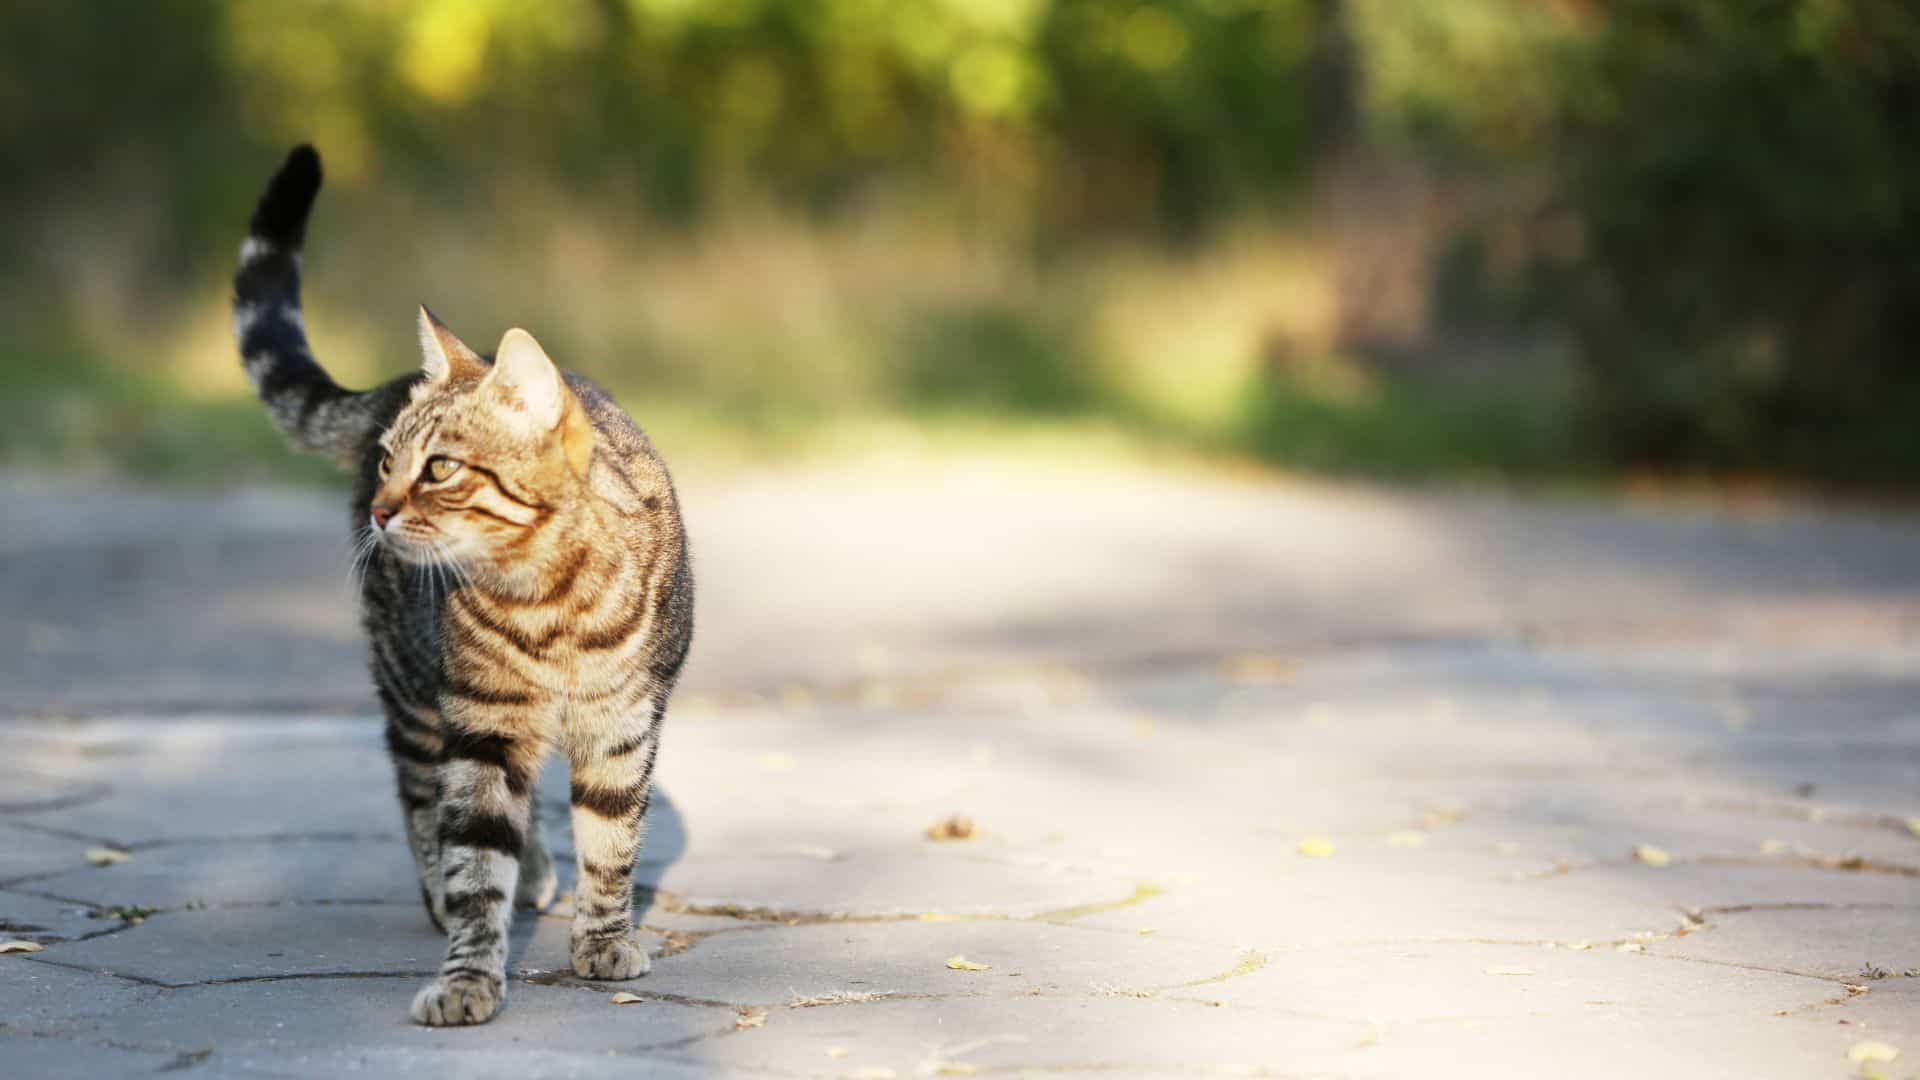 cat walking in a road